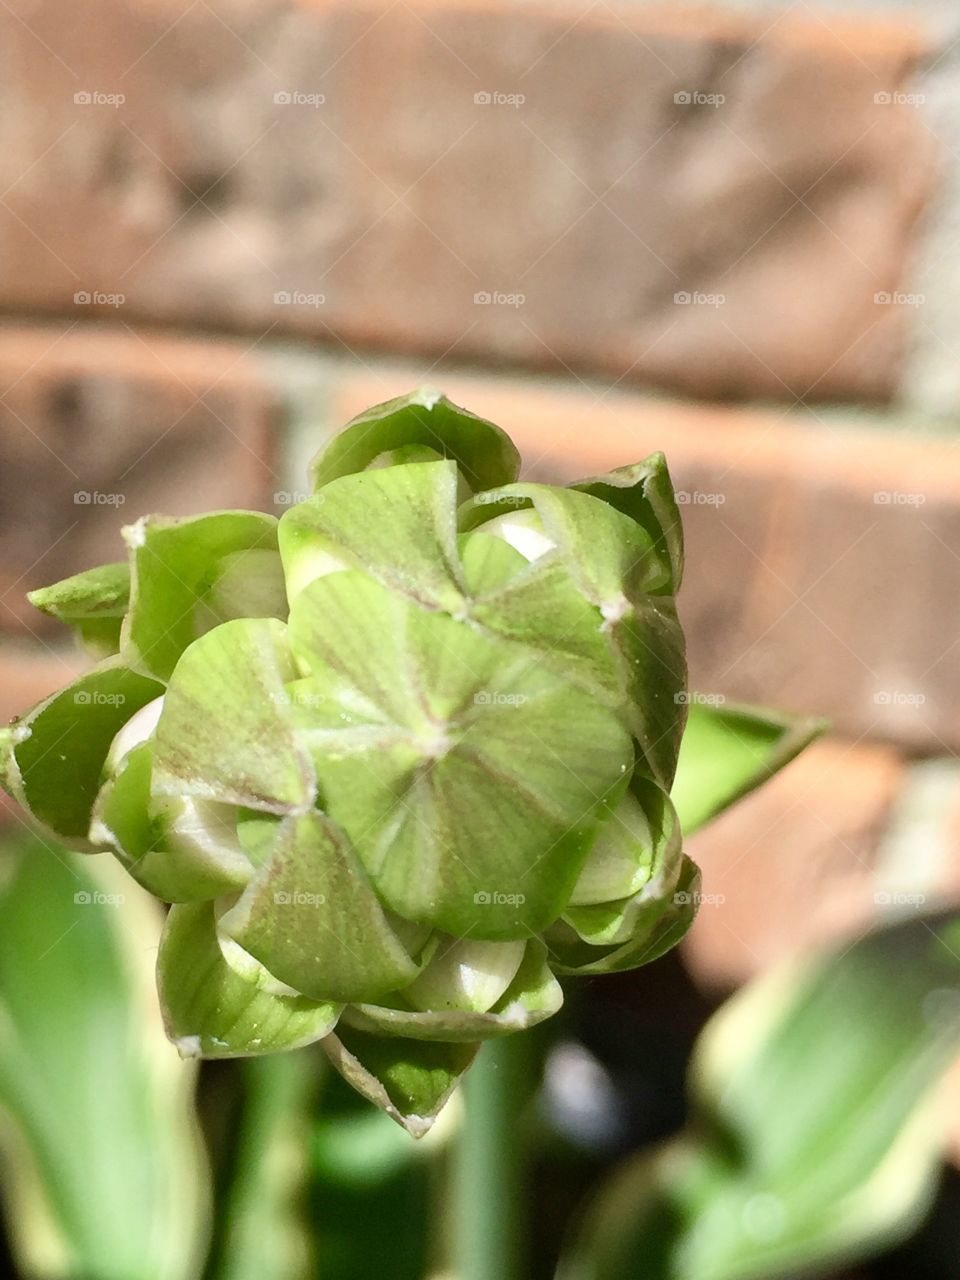 Macro Hosta flower bud
